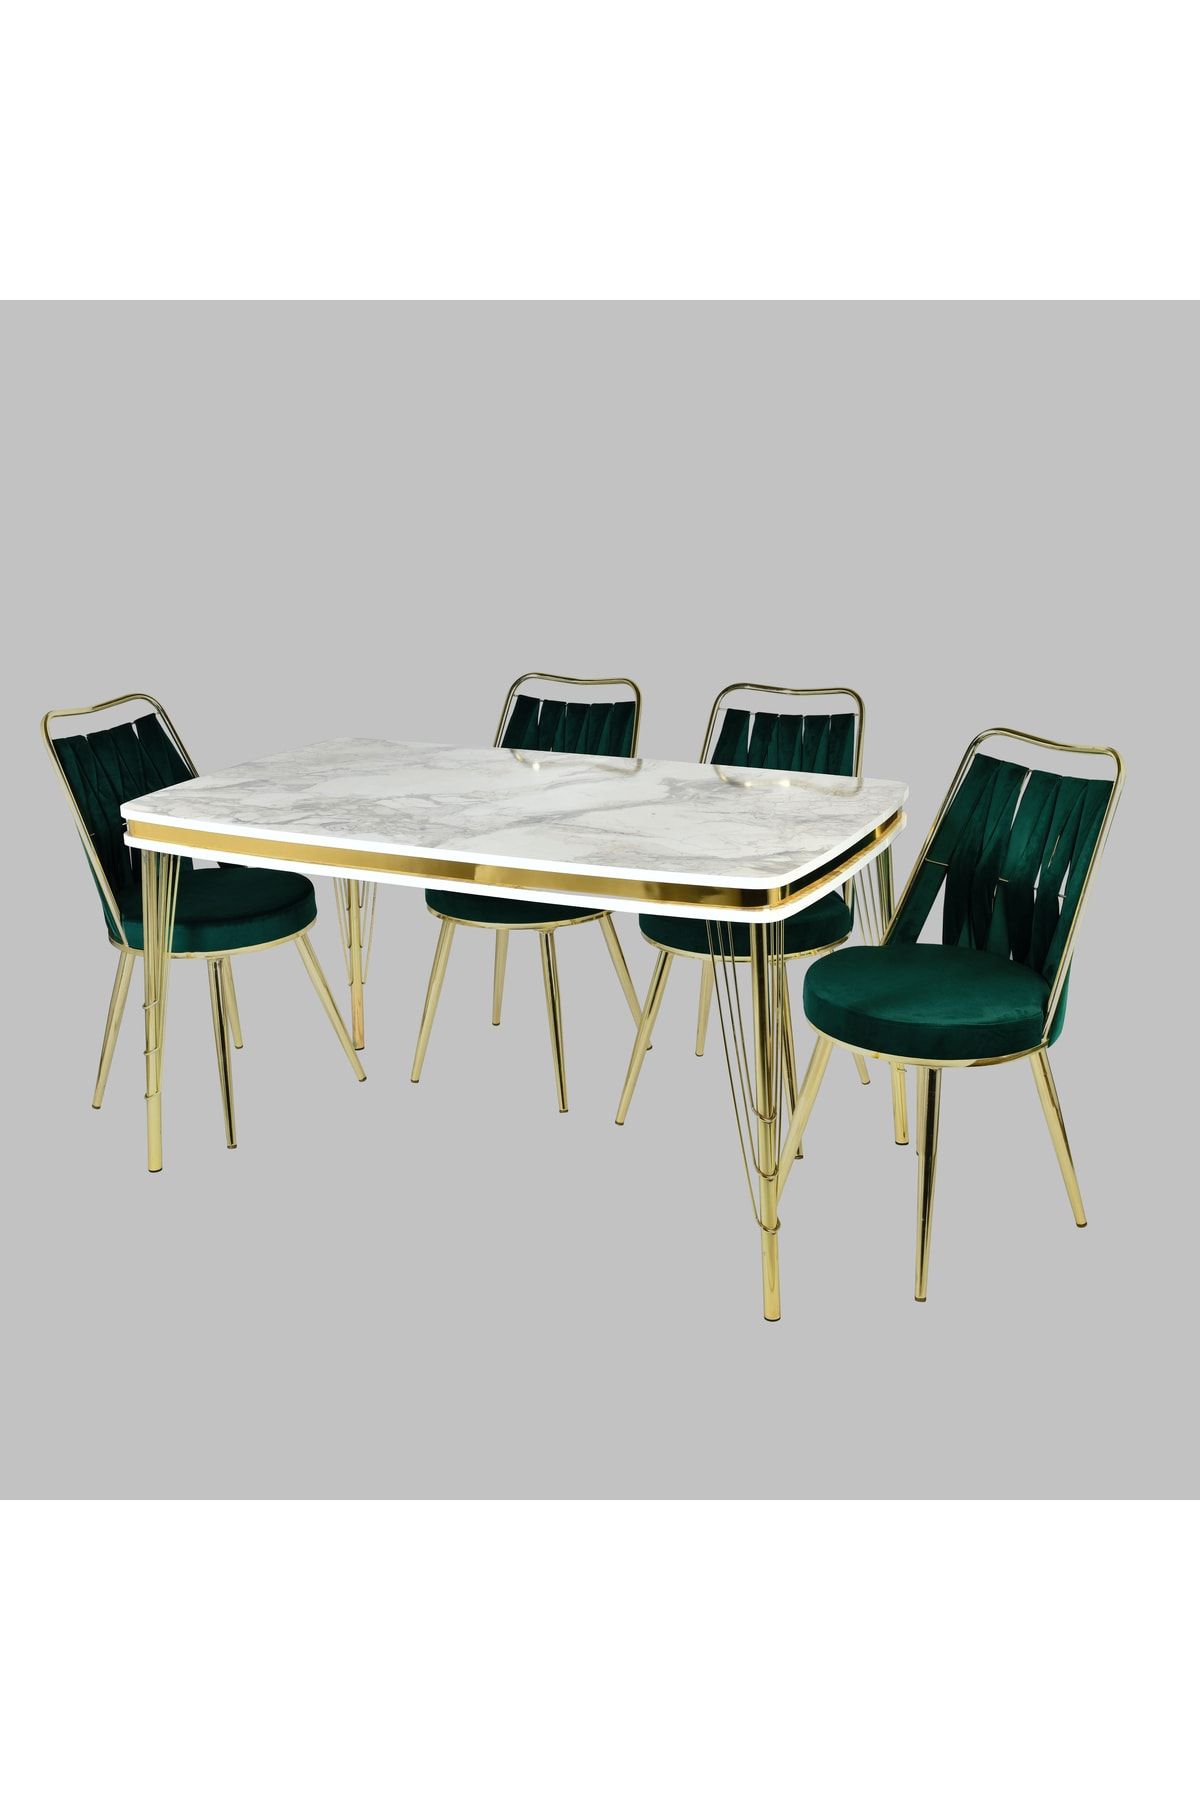 YZC Mutfak Salon Masa Sandalye Takımı 6 Adet Yeşil Sarmaşık Gold Sandalyeli Beyaz Mermer Masa